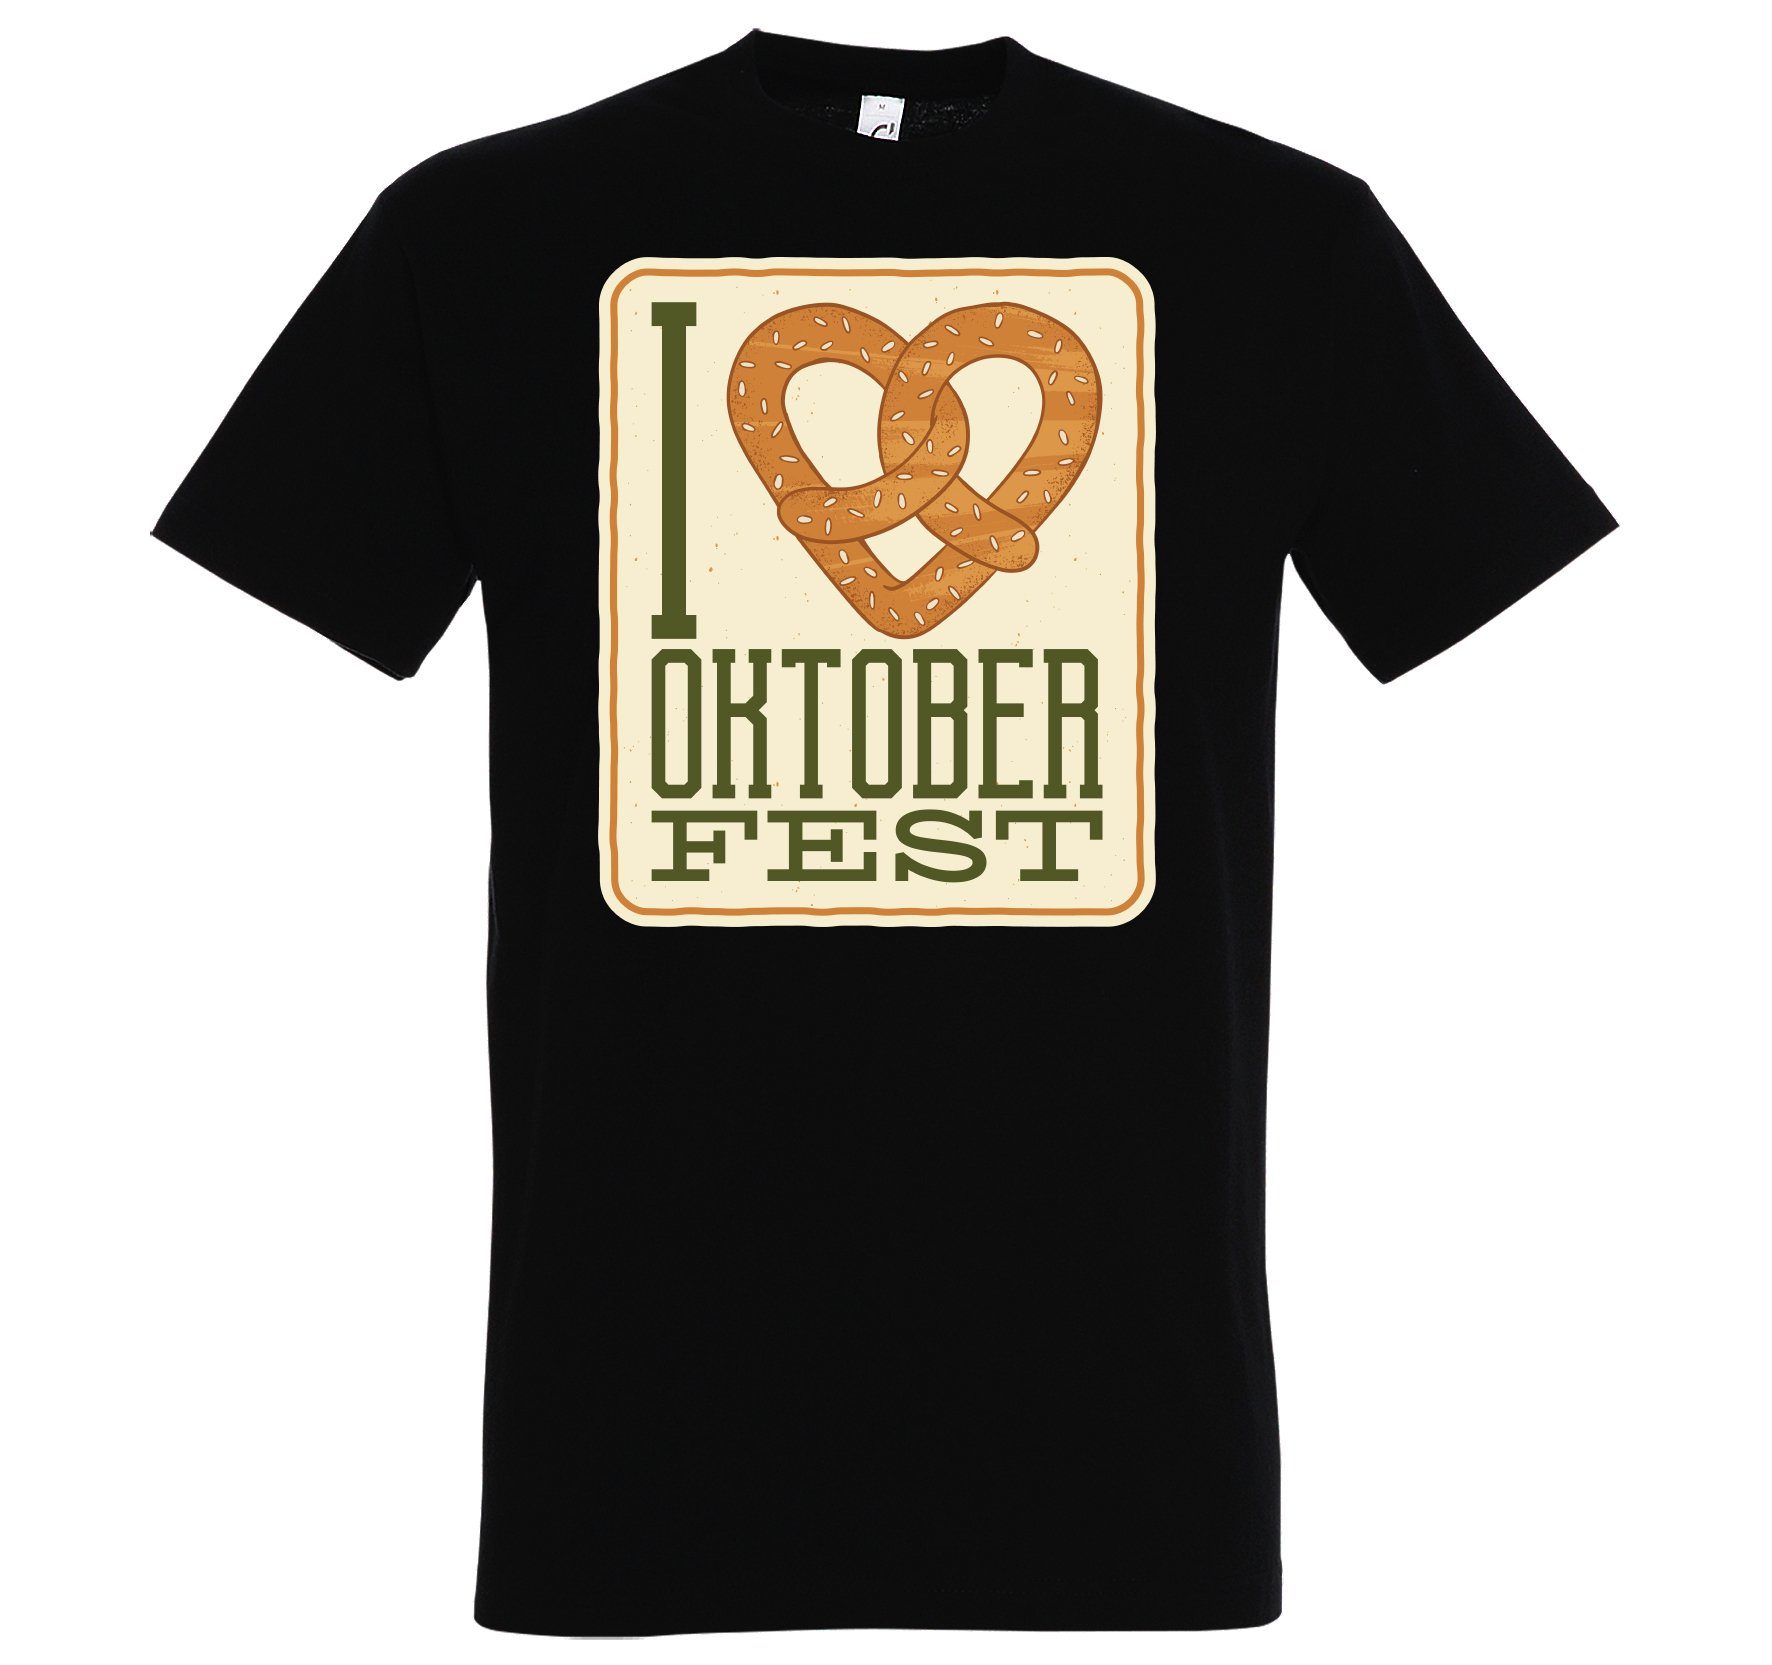 Youth Designz Print-Shirt I LOVE OKTOBERFEST Herren T-Shirt mit Fun-Look Brezel Aufdruck und Spruch